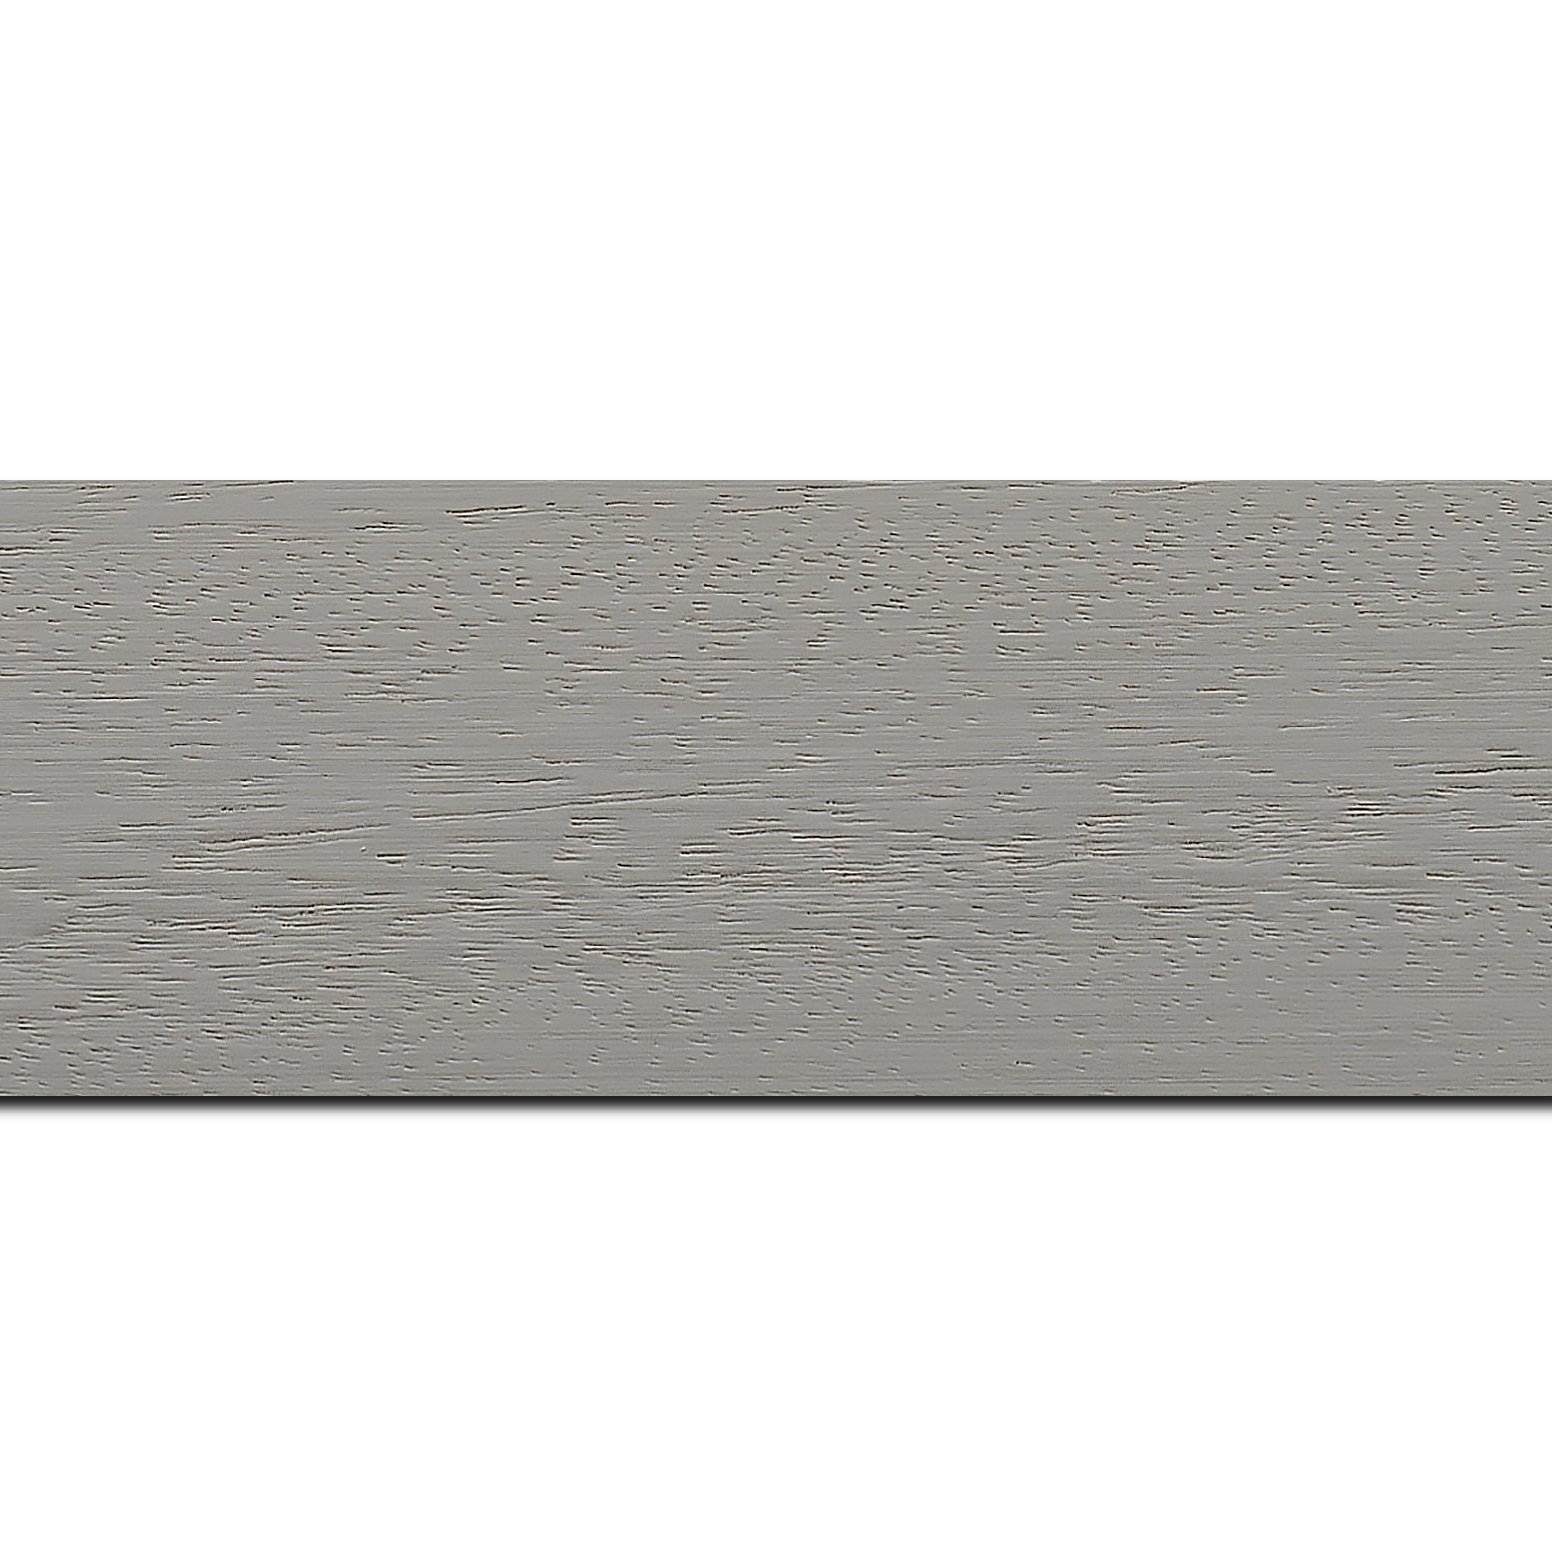 Pack par 12m, bois profil plat largeur 5.9cm couleur gris clair satiné (longueur baguette pouvant varier entre 2.40m et 3m selon arrivage des bois)